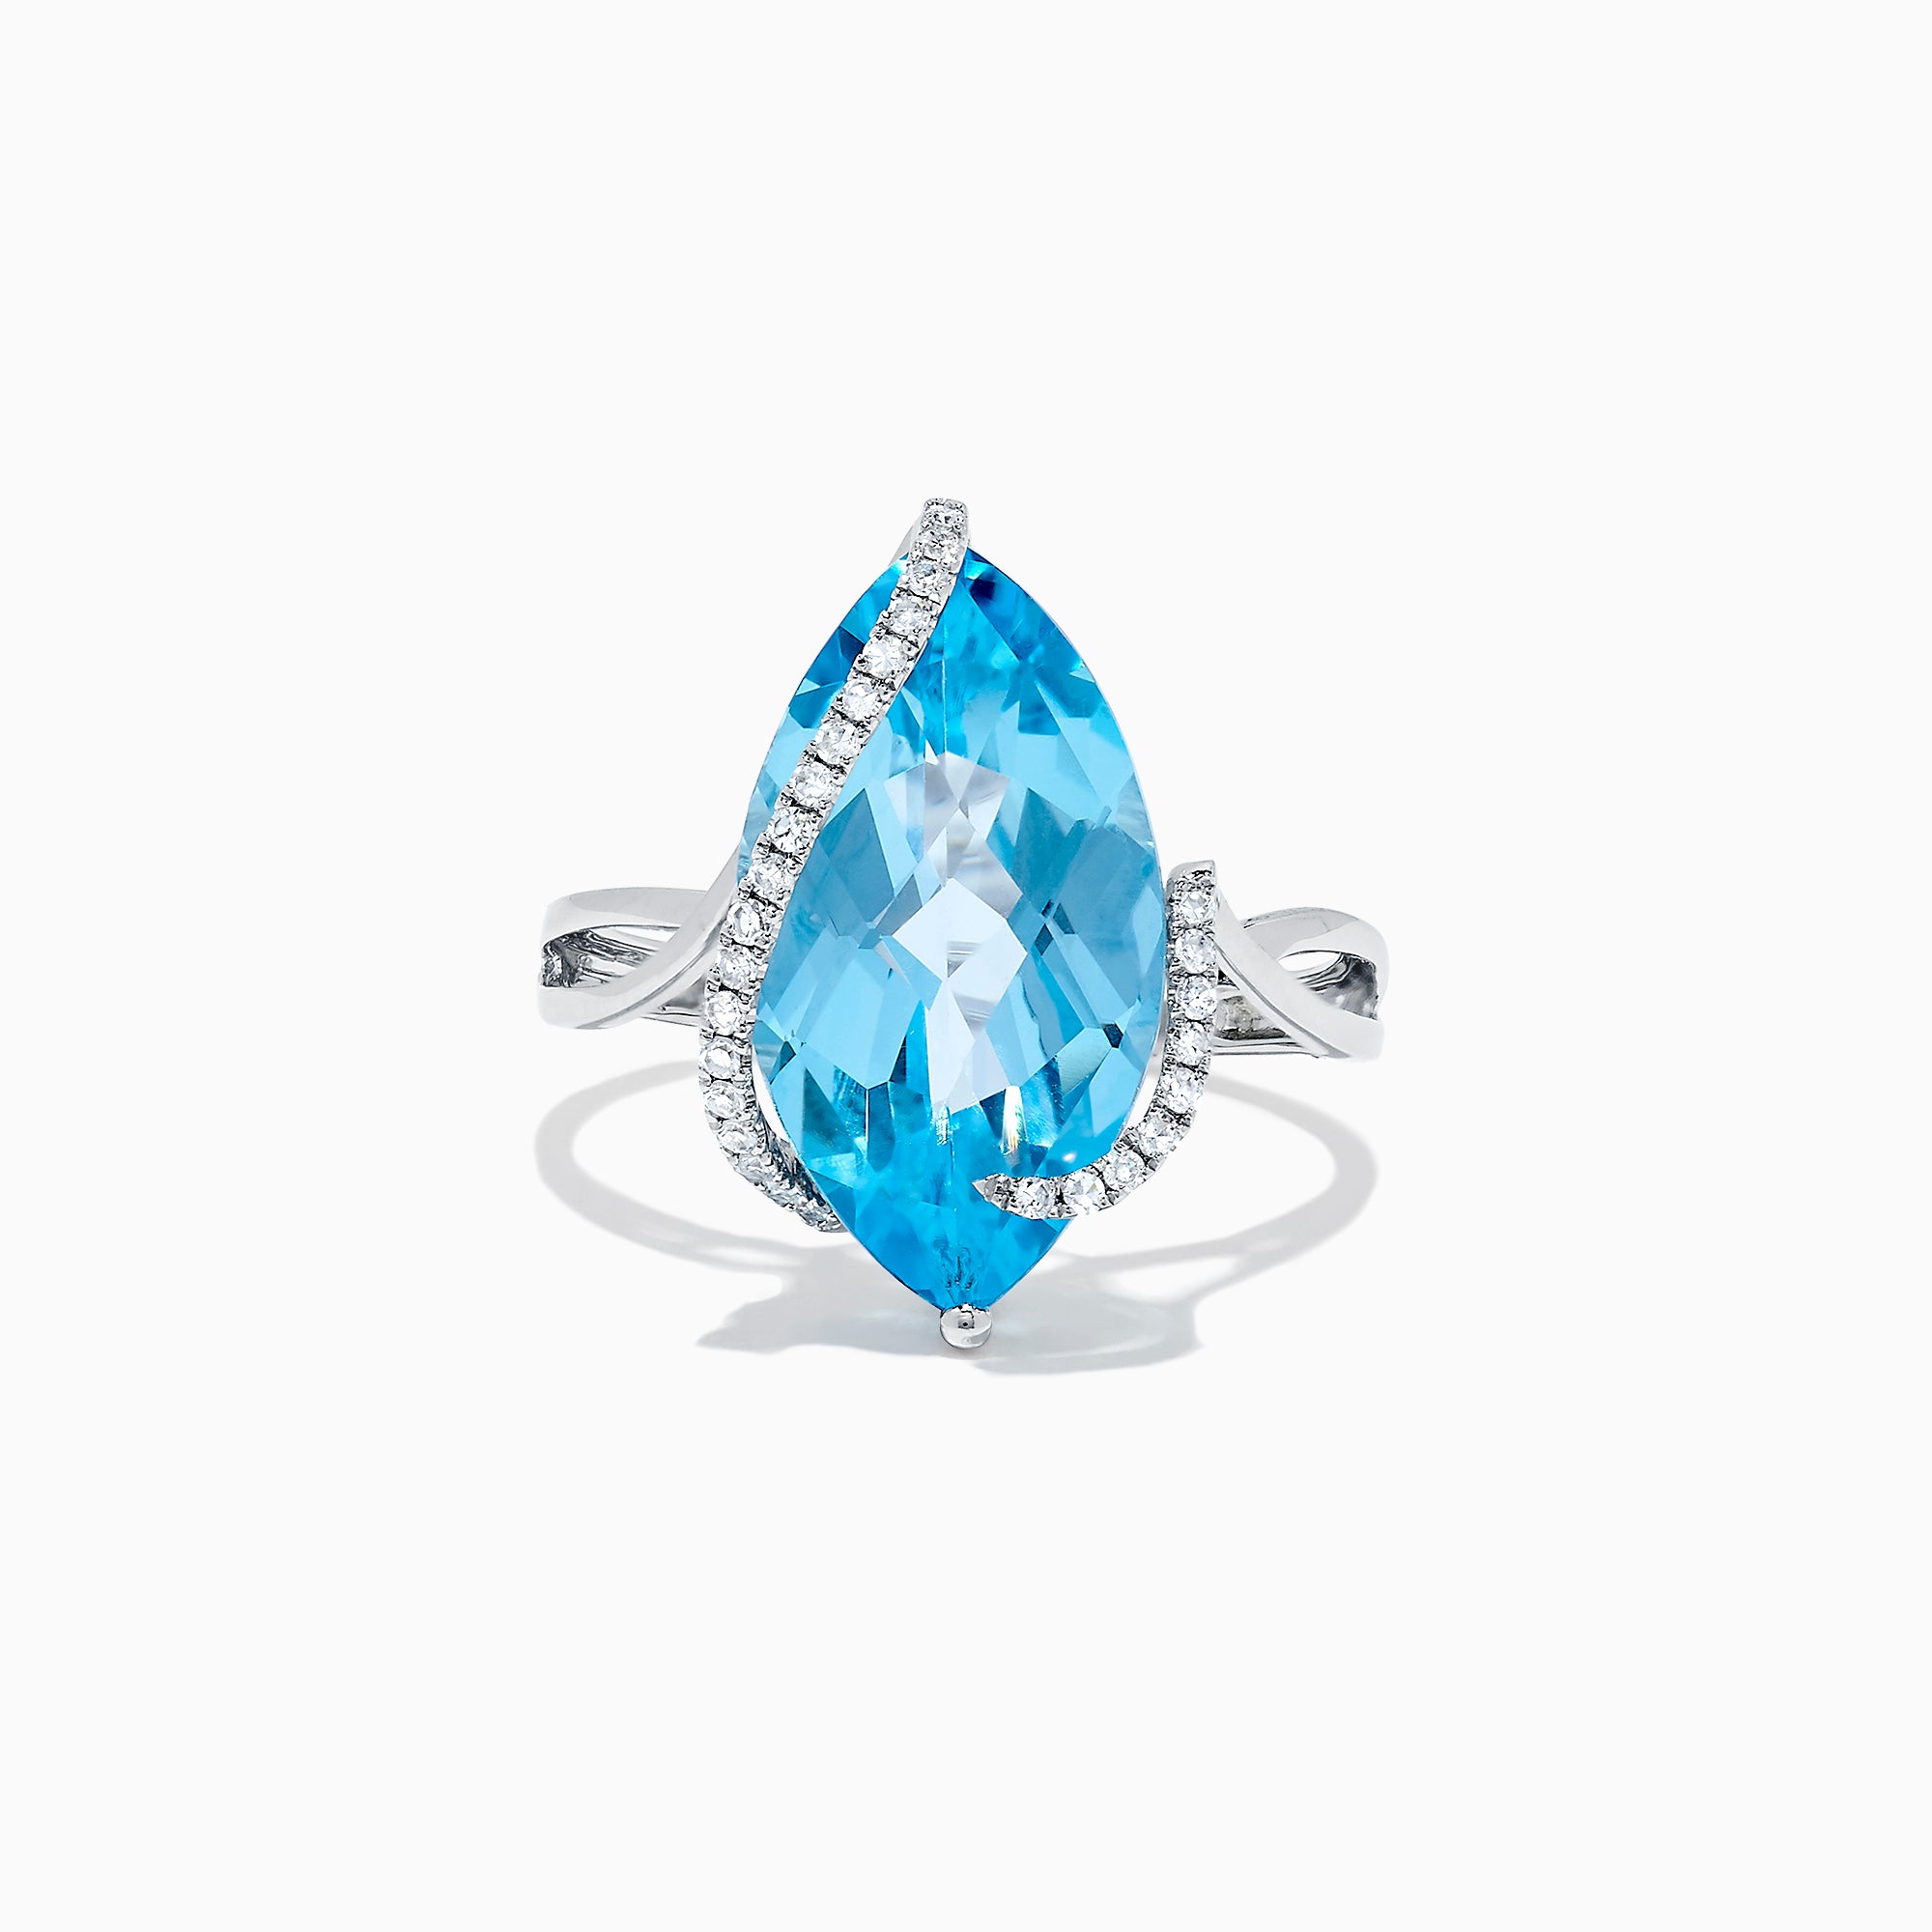 Effy Ocean Bleu 14K White Gold Blue Topaz & Diamond Ring, 7.27 TCW